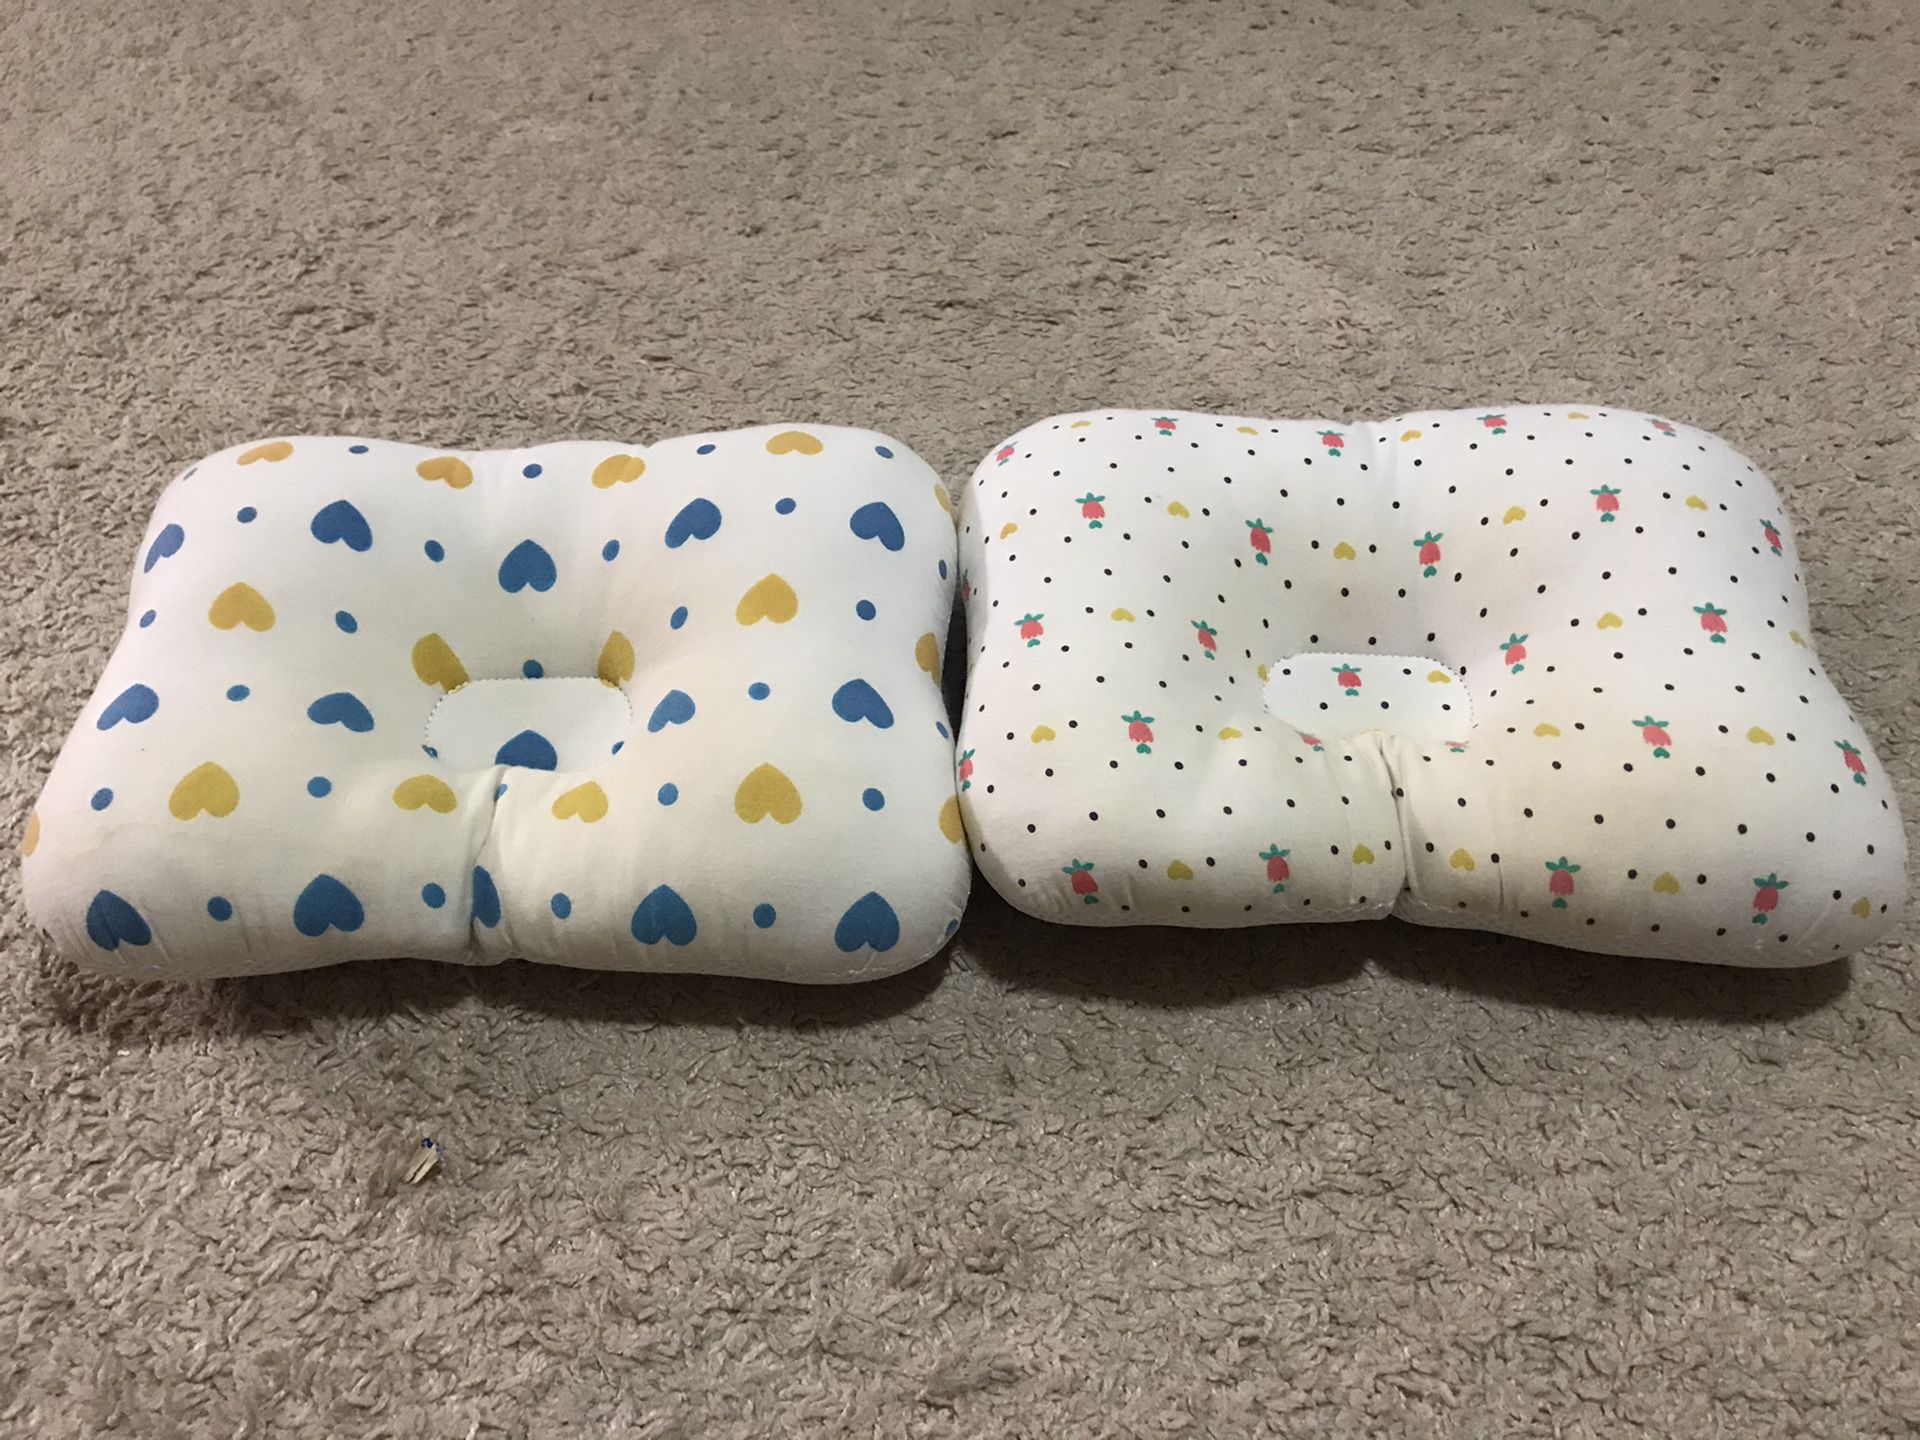 Baby pillows